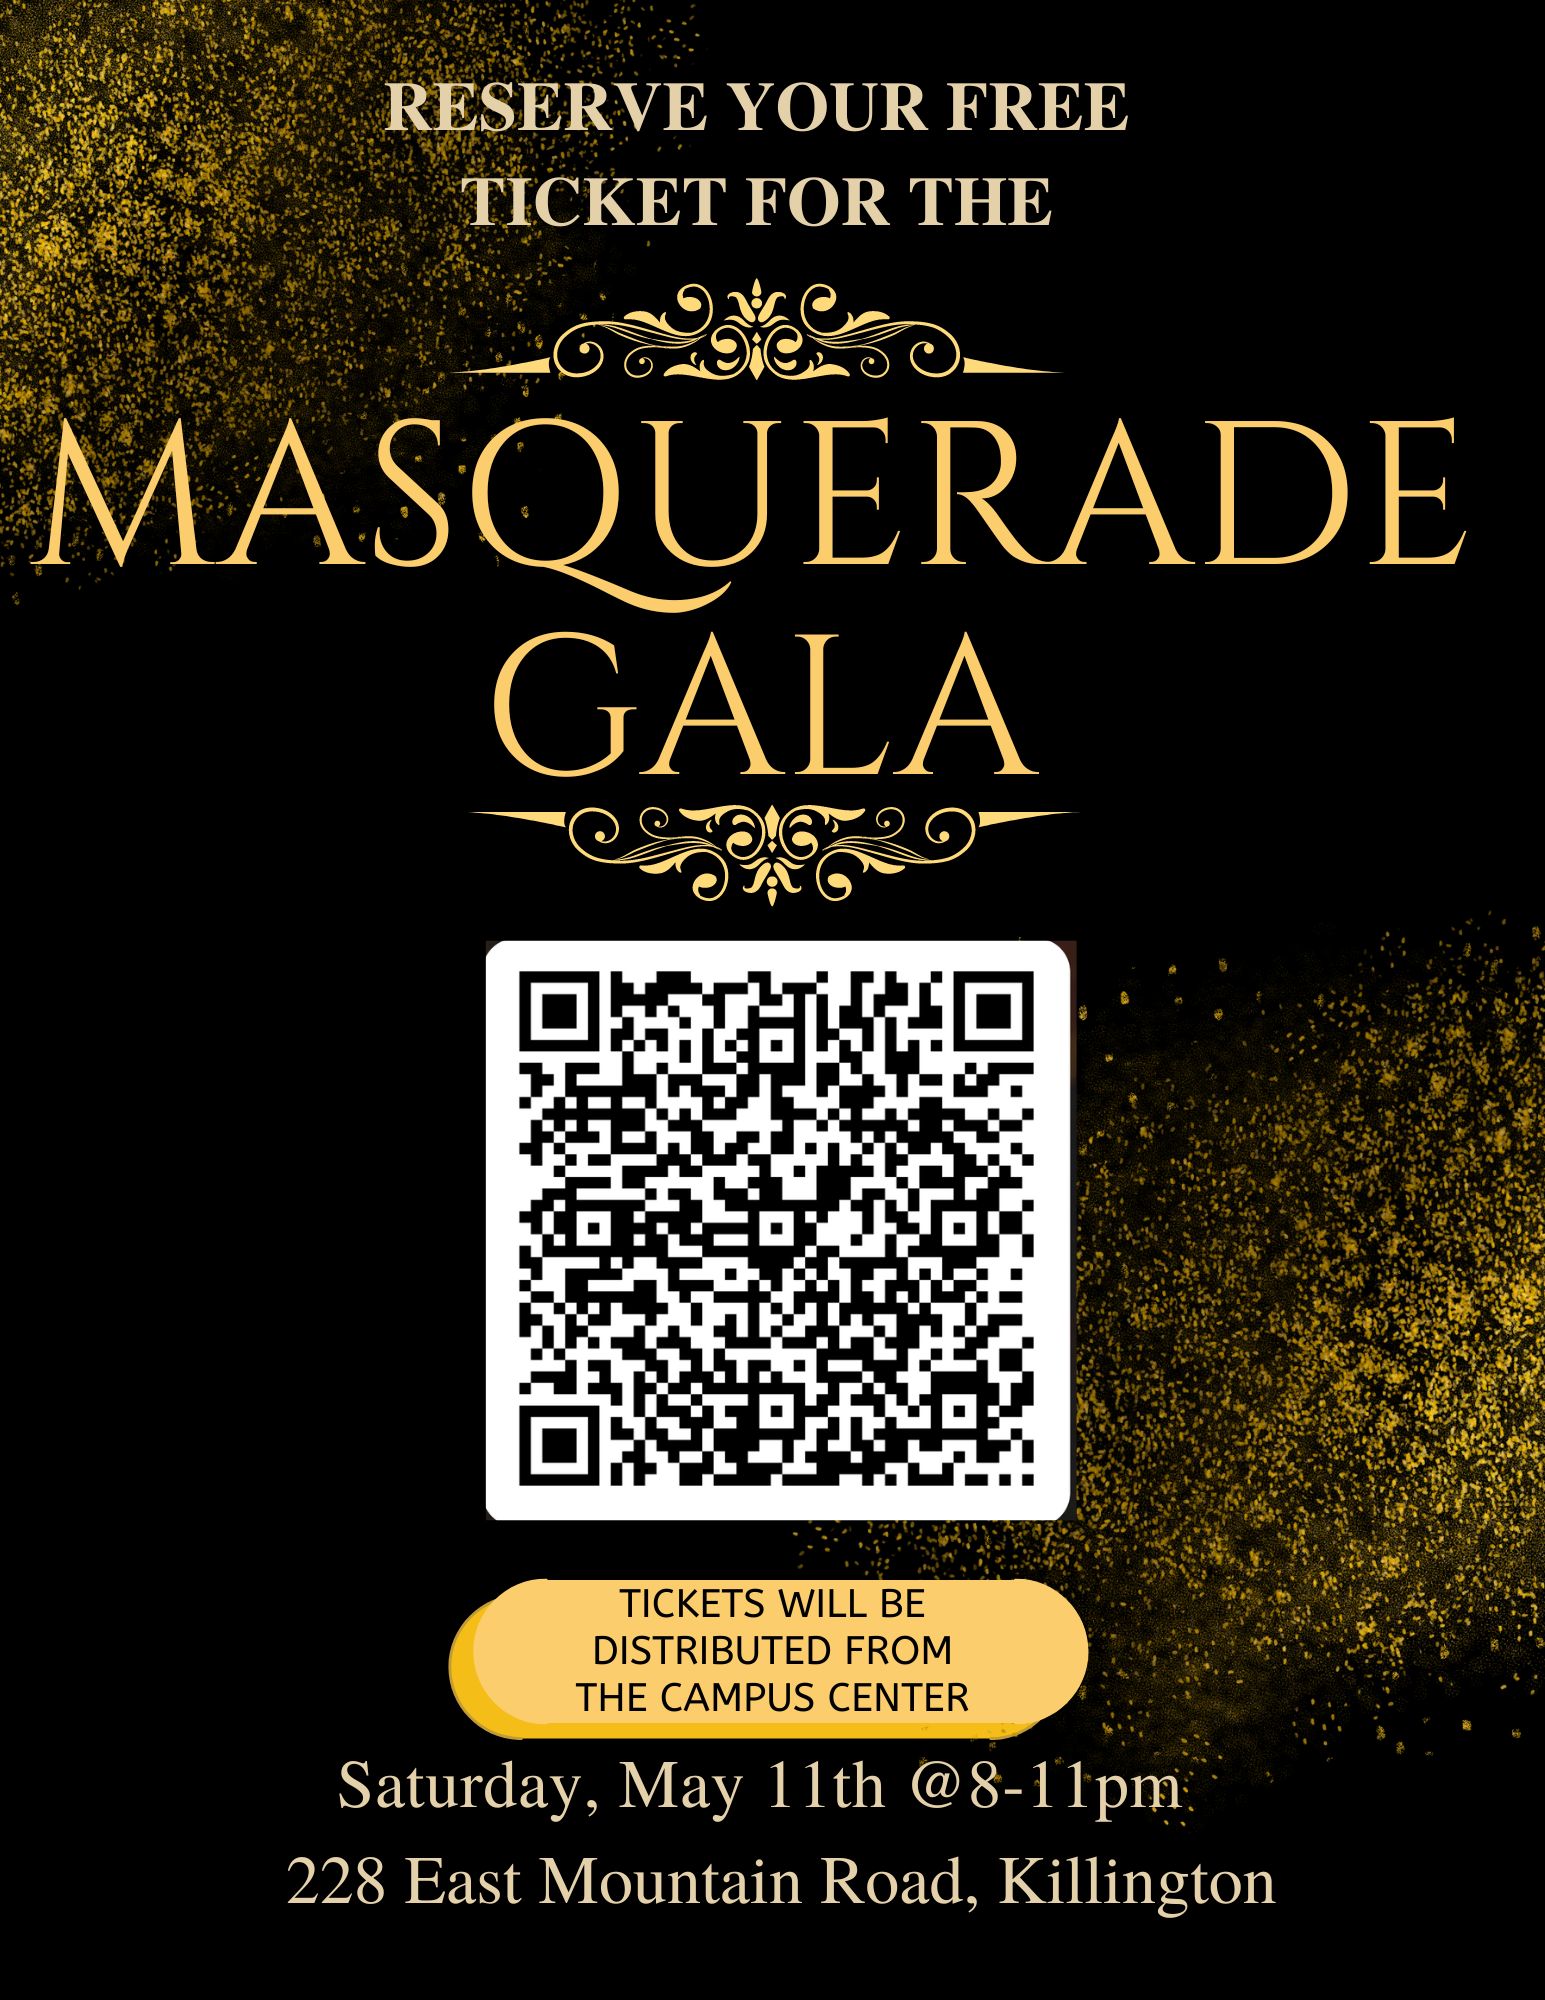 Masquerade Gala: Get your Tickets Thursday!